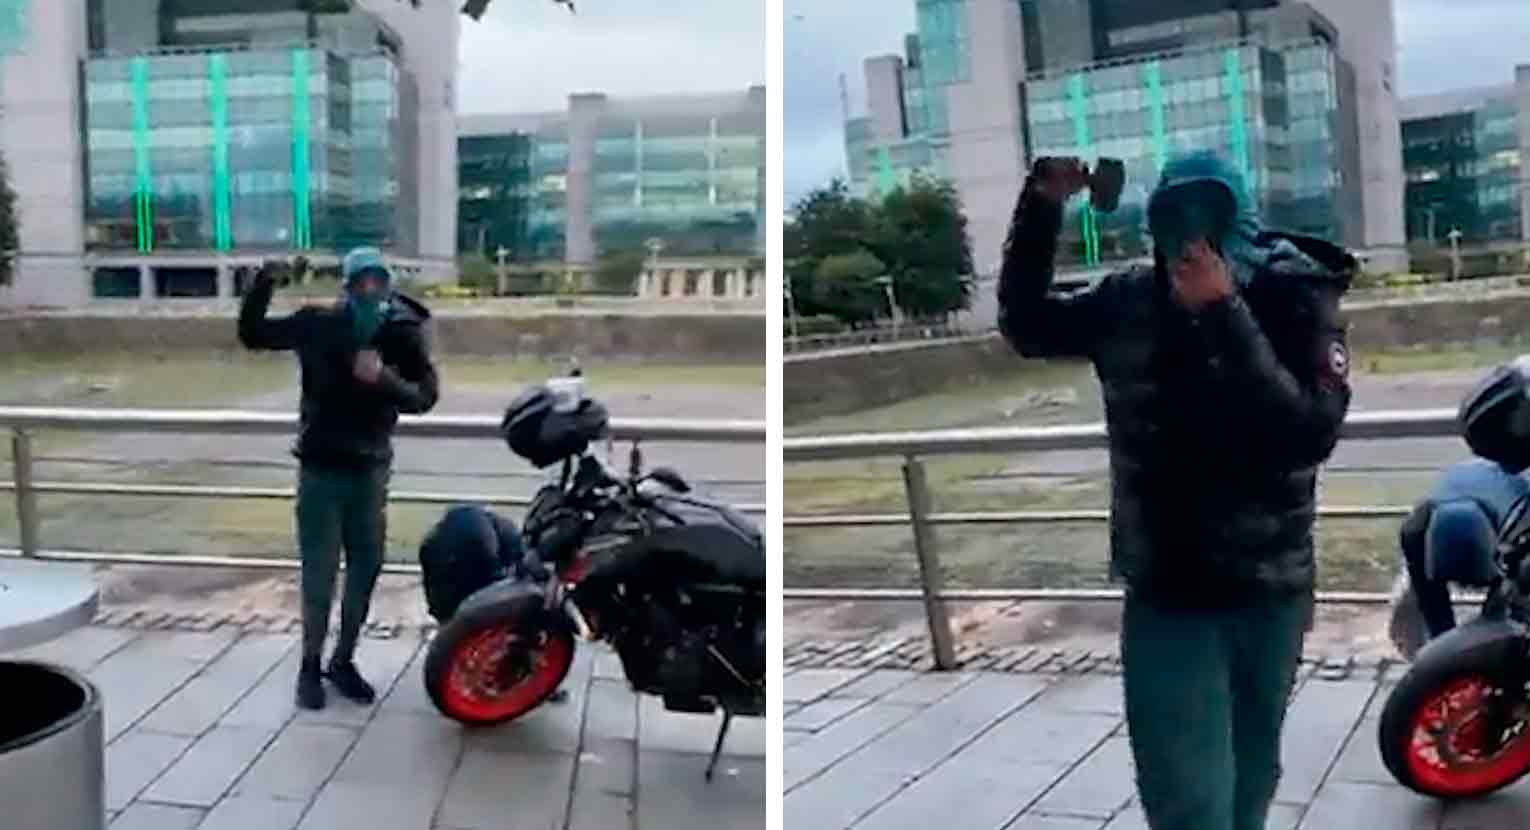 Vídeo: Bandidos ameaçam homem que gravava roubo de moto. Imagens: Reprodução Twitter @VideosIrish